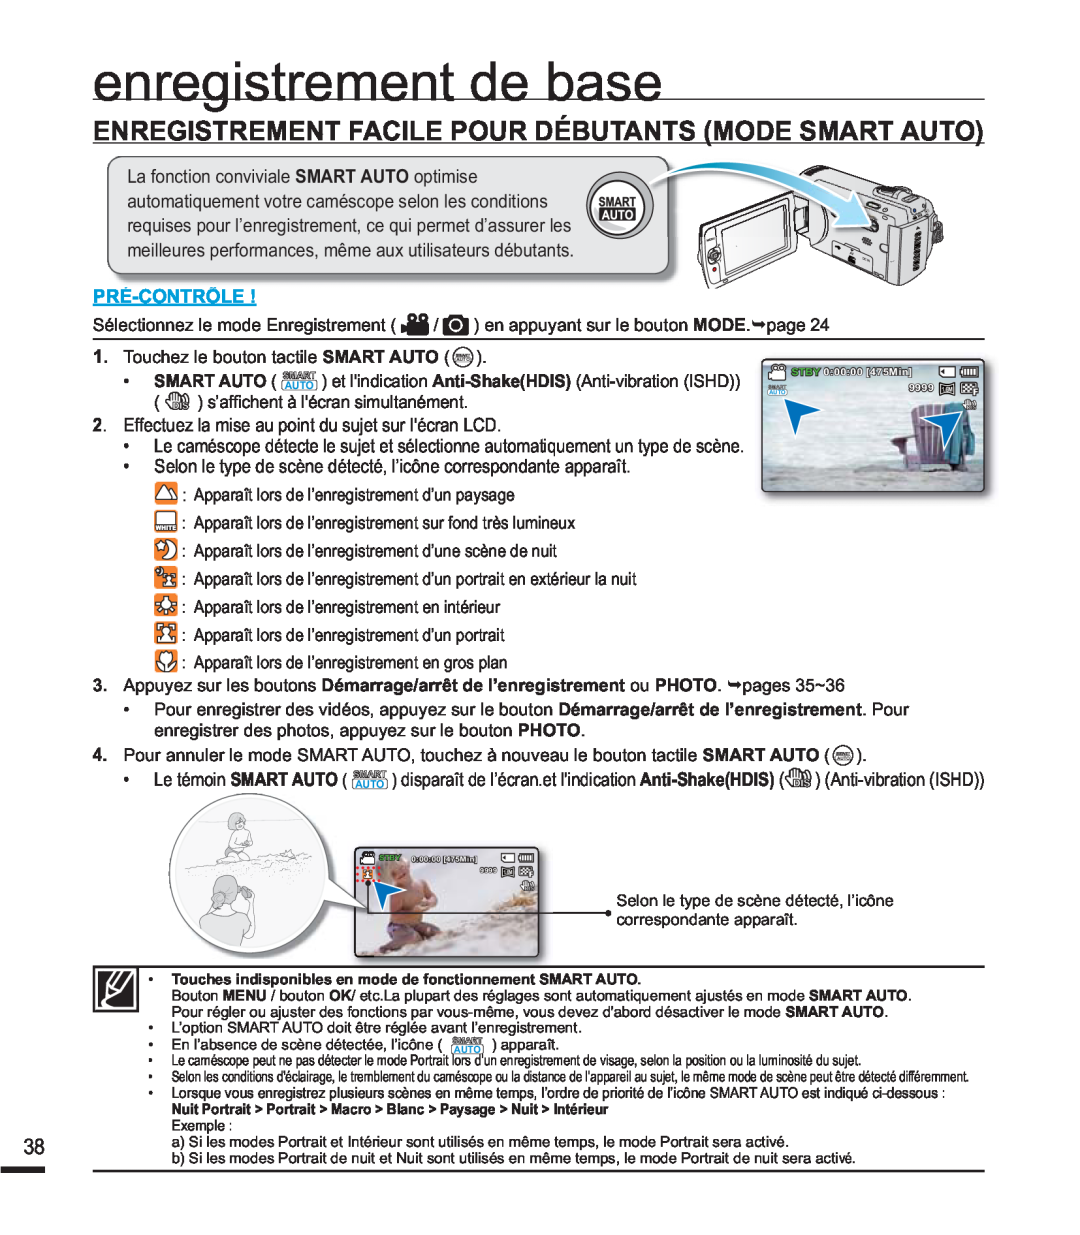 Samsung SMX-F40SP/EDC manual Enregistrement Facile Pour Débutants Mode Smart Auto, HquhjlvwuhphqwGhEdvh, Pré-Contrôle 